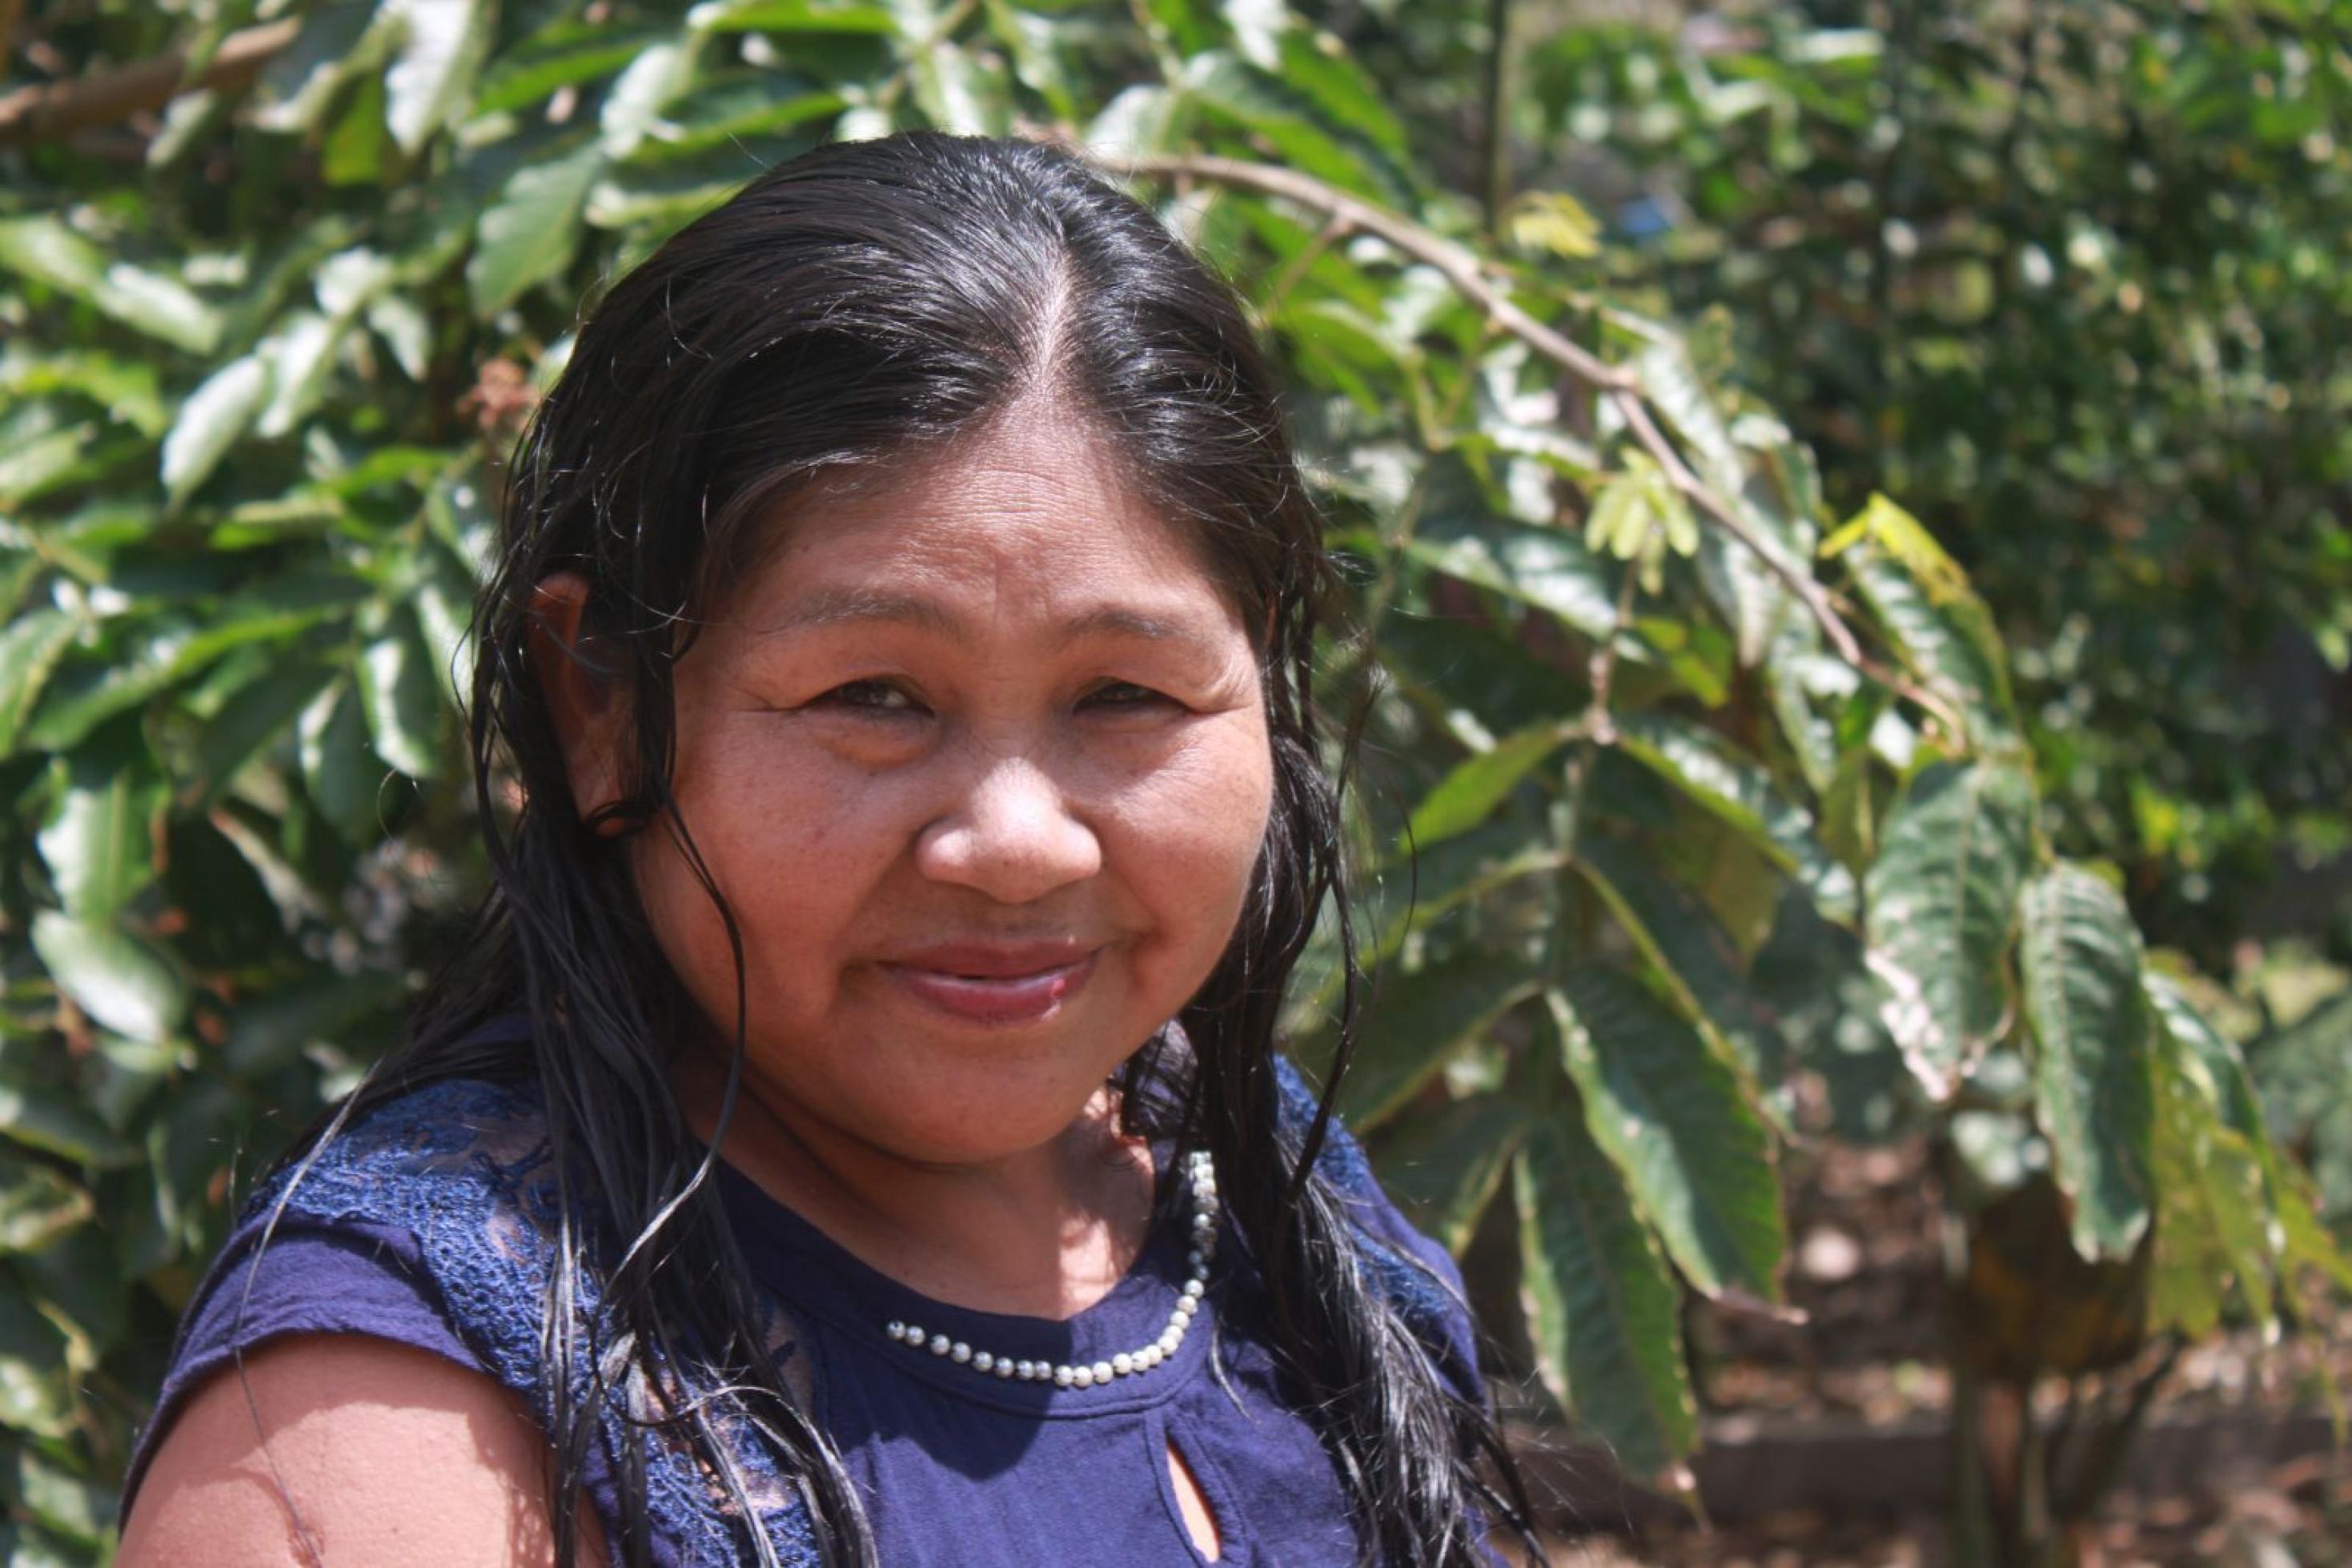 Brustbild einer rund 50-jährigen indigenen Frau mit langen schwarzen Haaren. Im Hintergrund grünes Buschwerk.